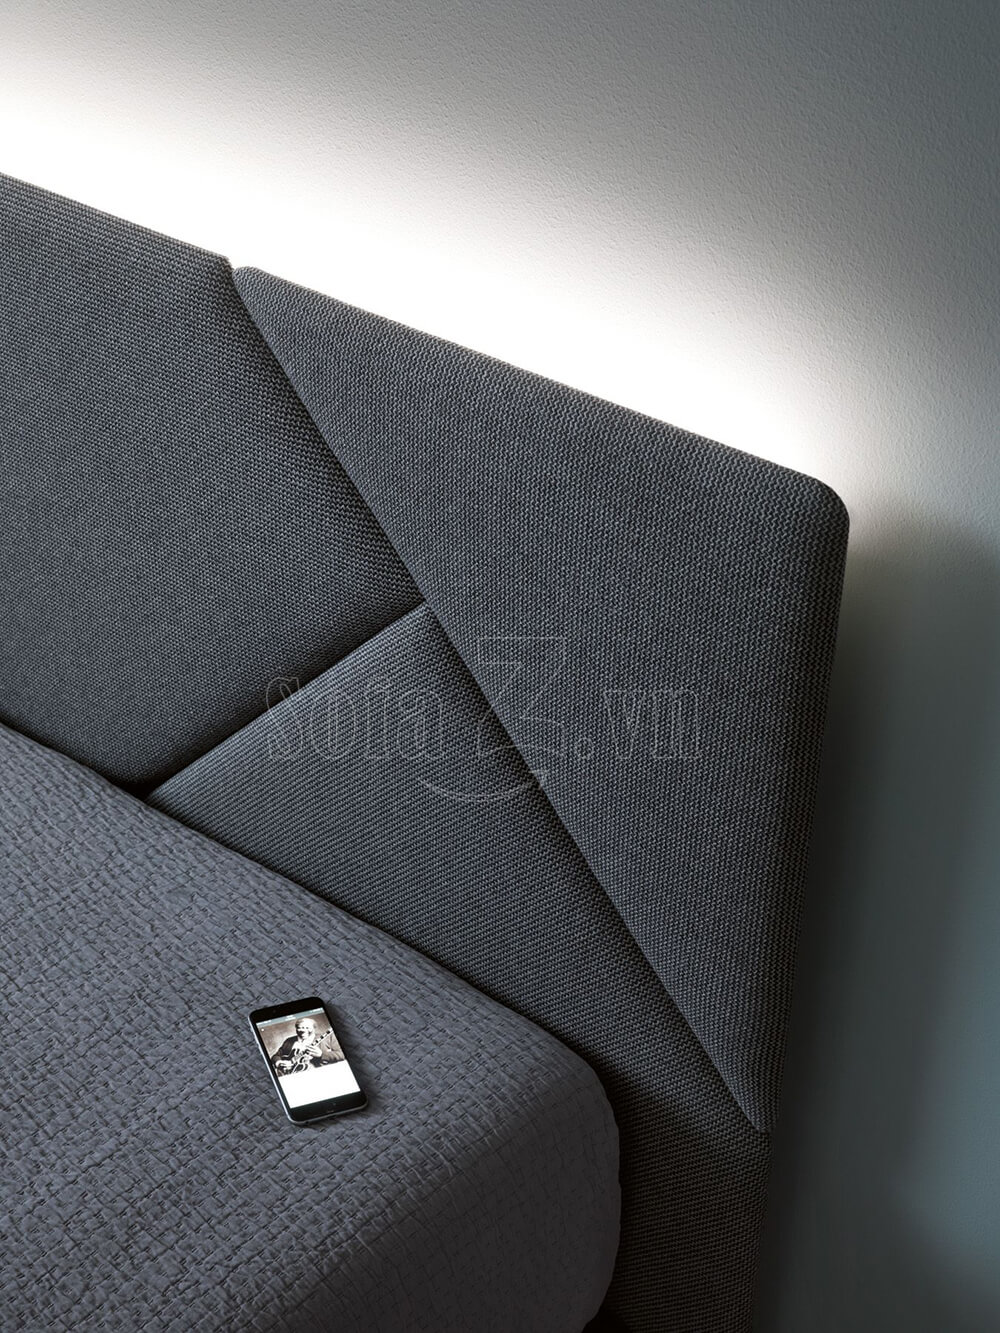 Sofa phòng ngủ PN156 - Giường ngủ bọc vải Letto